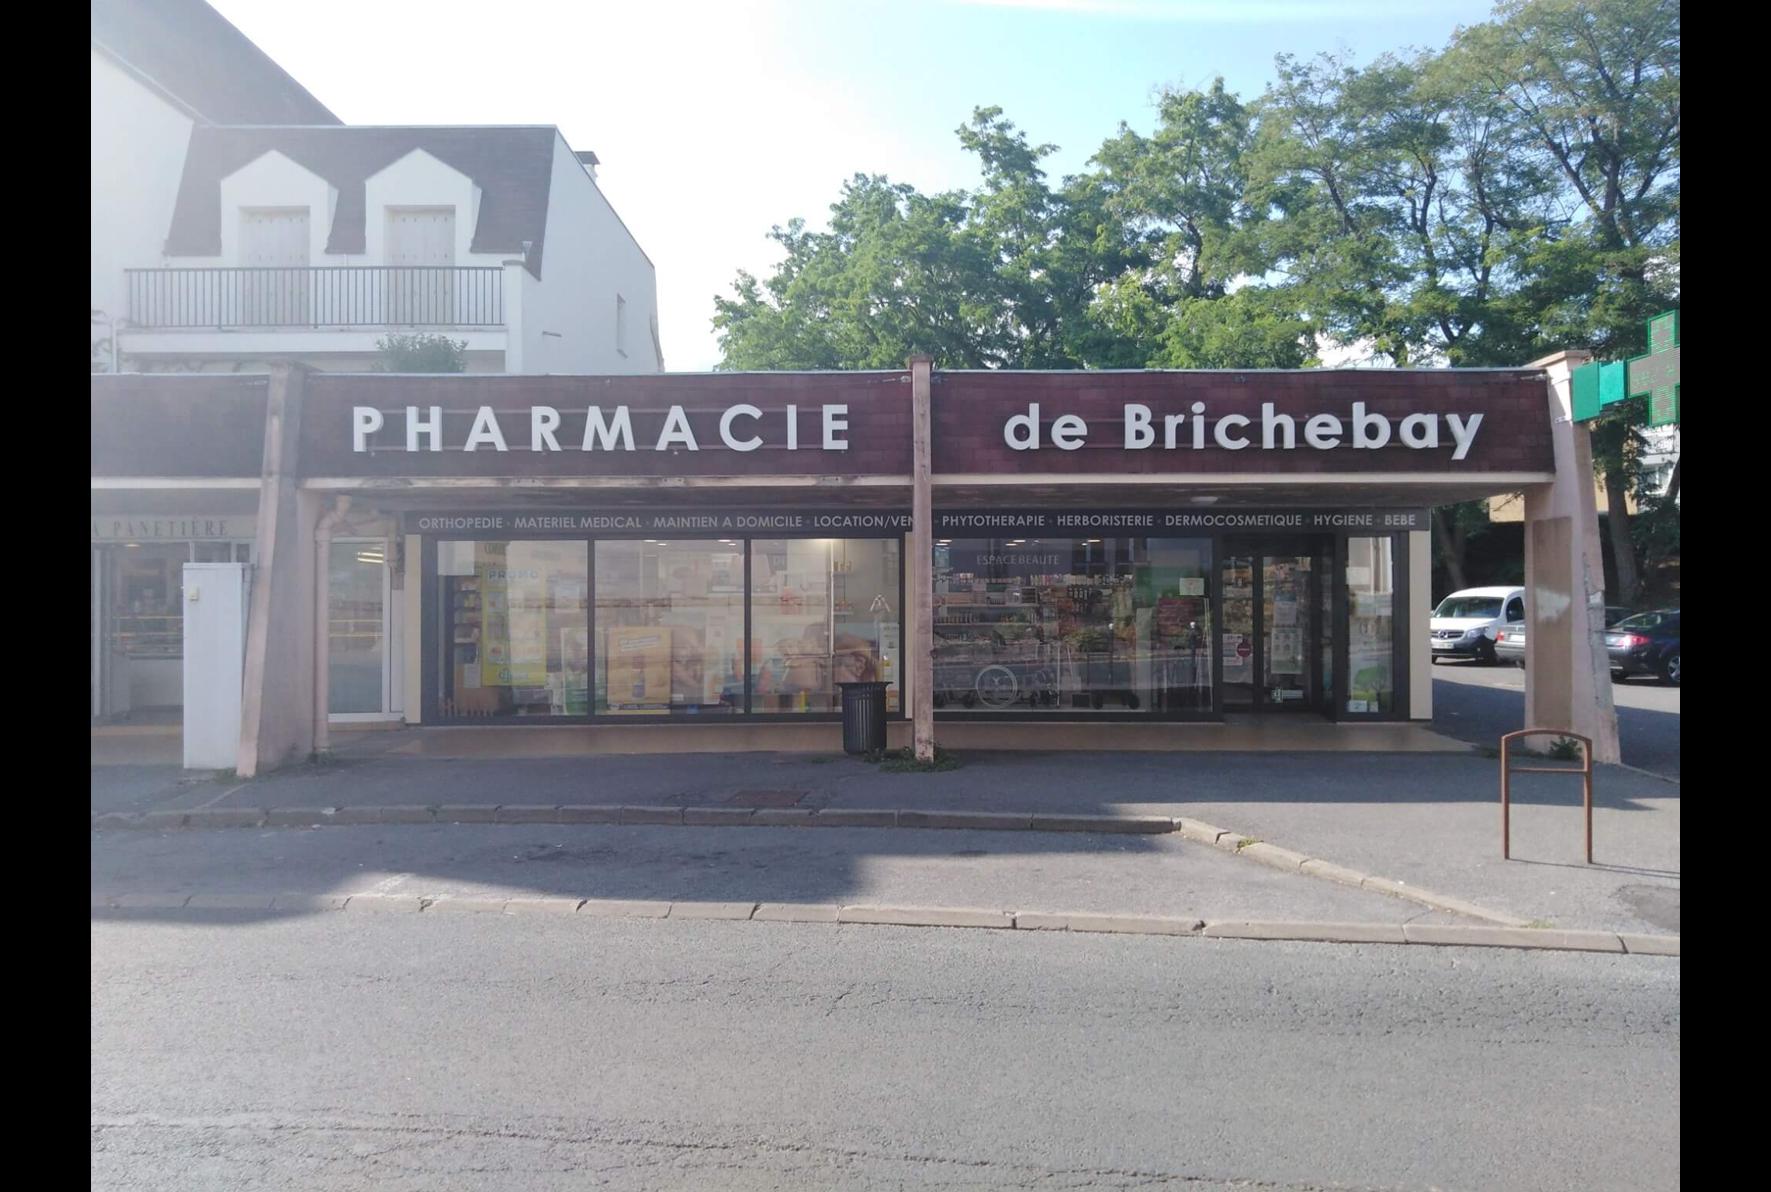 Magasin Pharmacie de Brichebay - Senlis (60300) Visuel 1